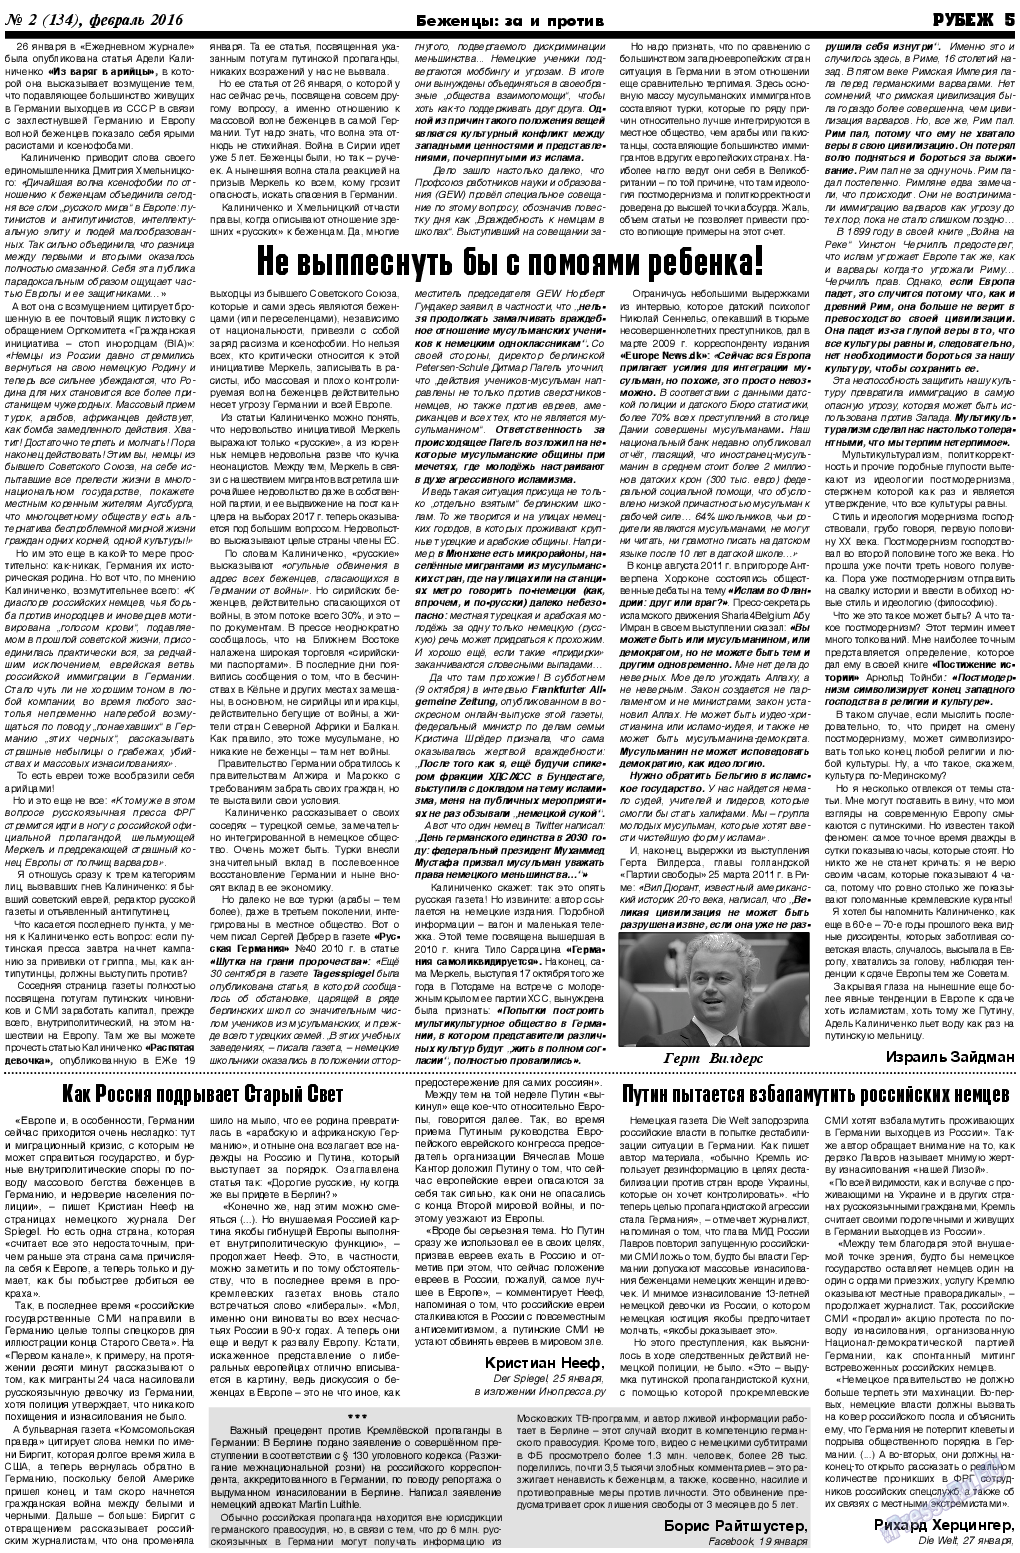 Рубеж (газета). 2016 год, номер 2, стр. 5